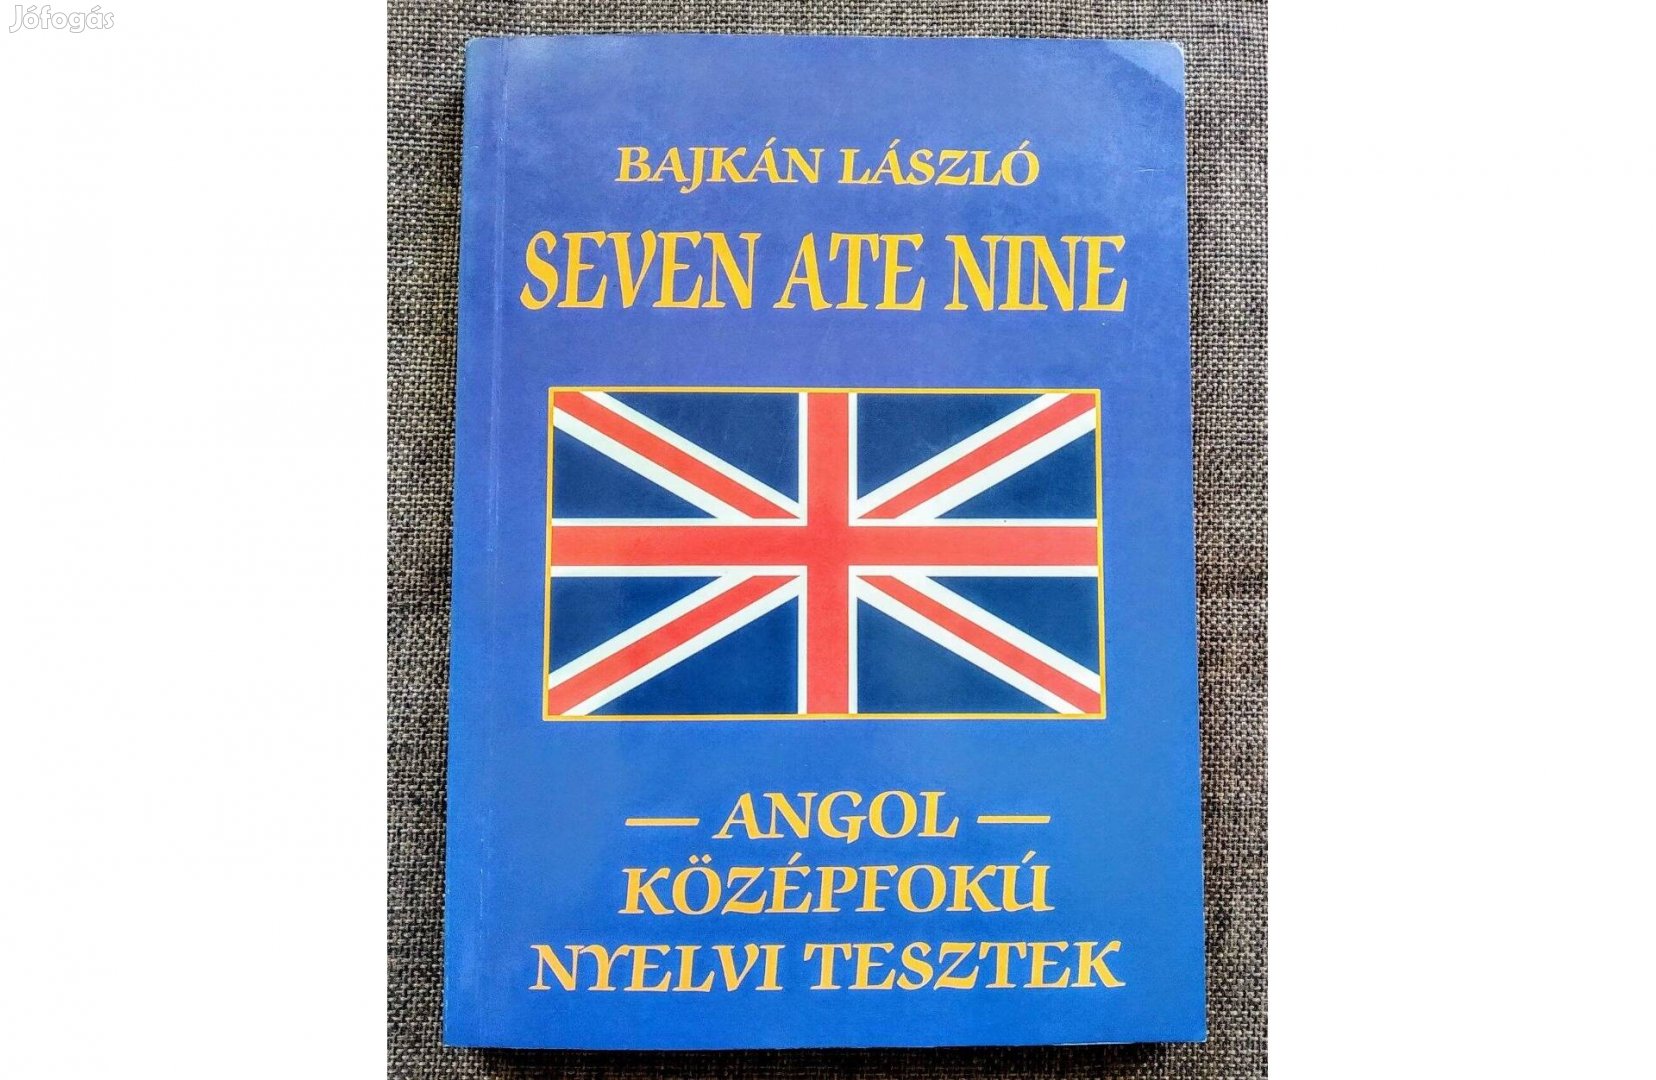 Seven at nine Bajkán László